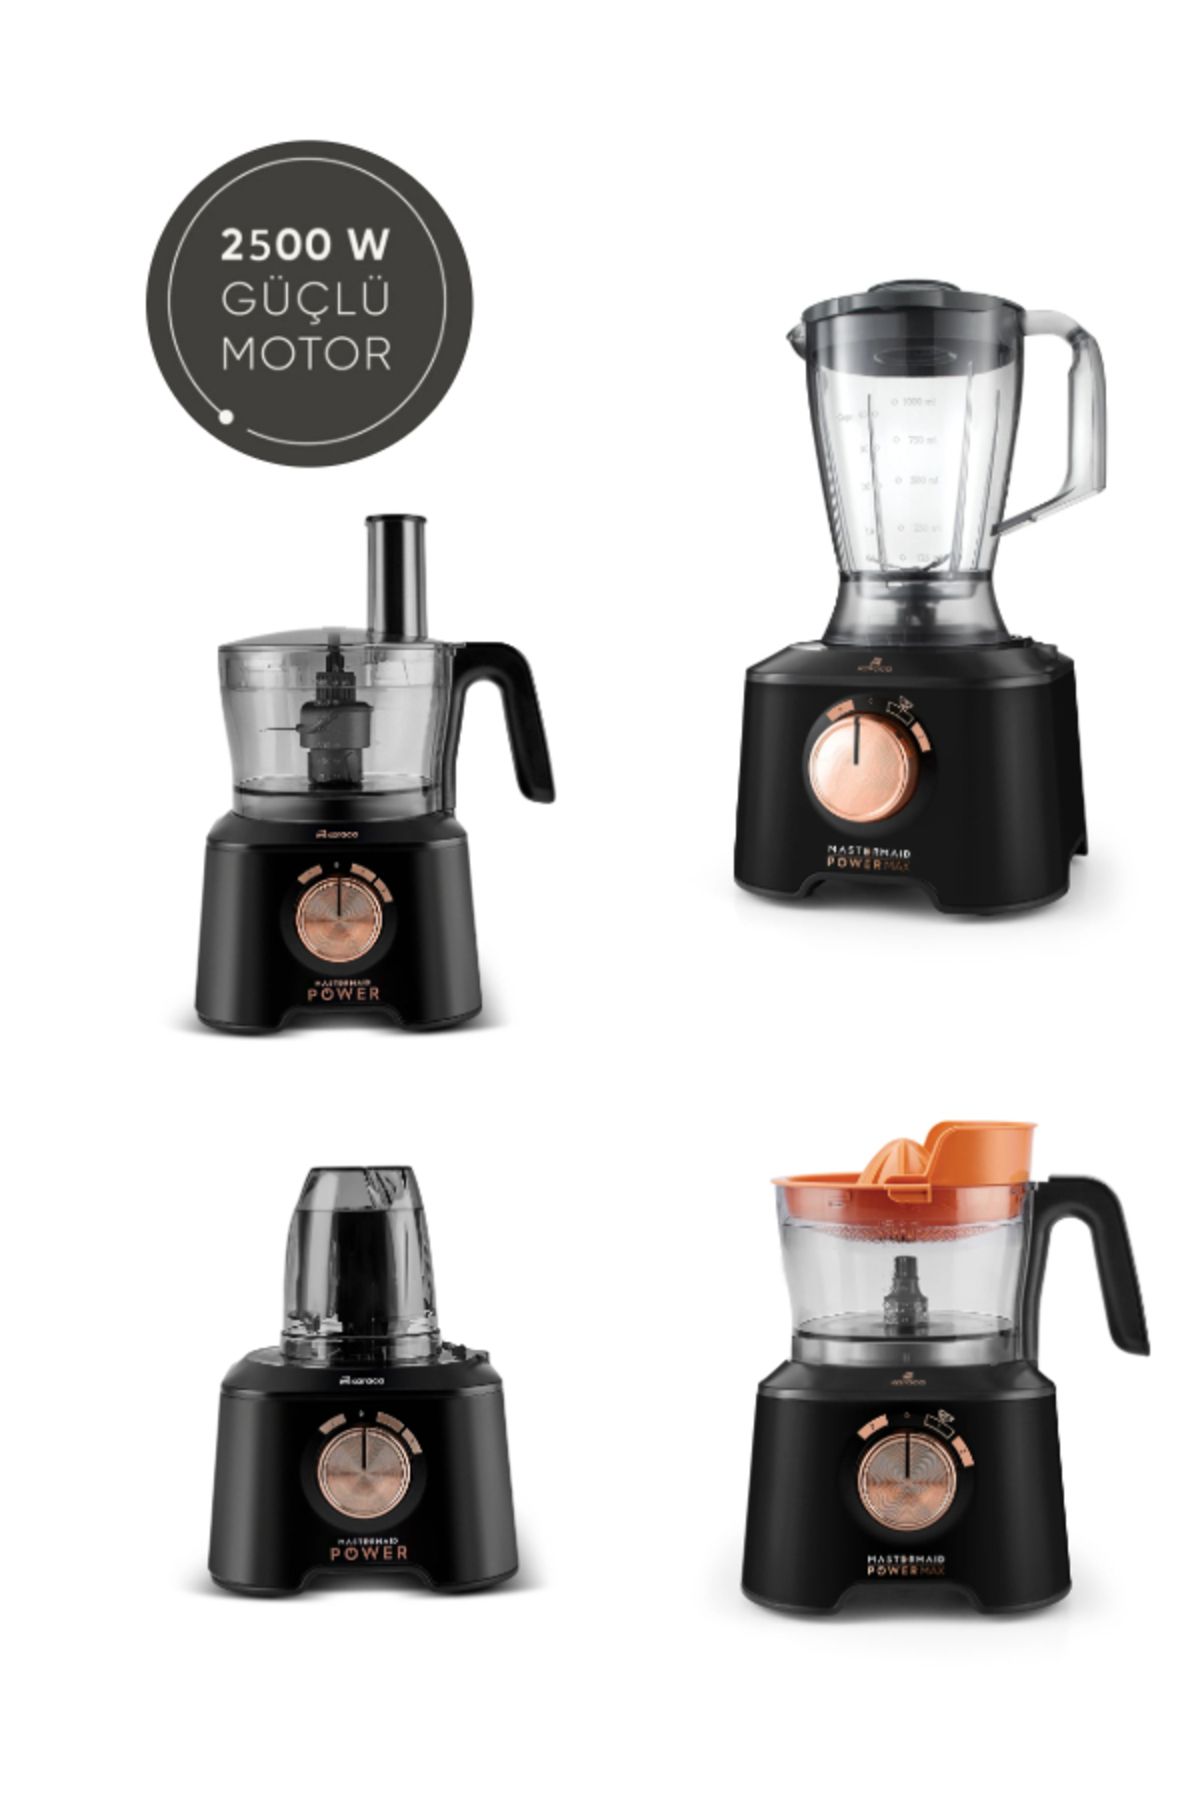 Karaca Premium Blender Hamur Yoğurma ve Smothe 11 in 1 Mutfak Robotu Black Copper 2500W